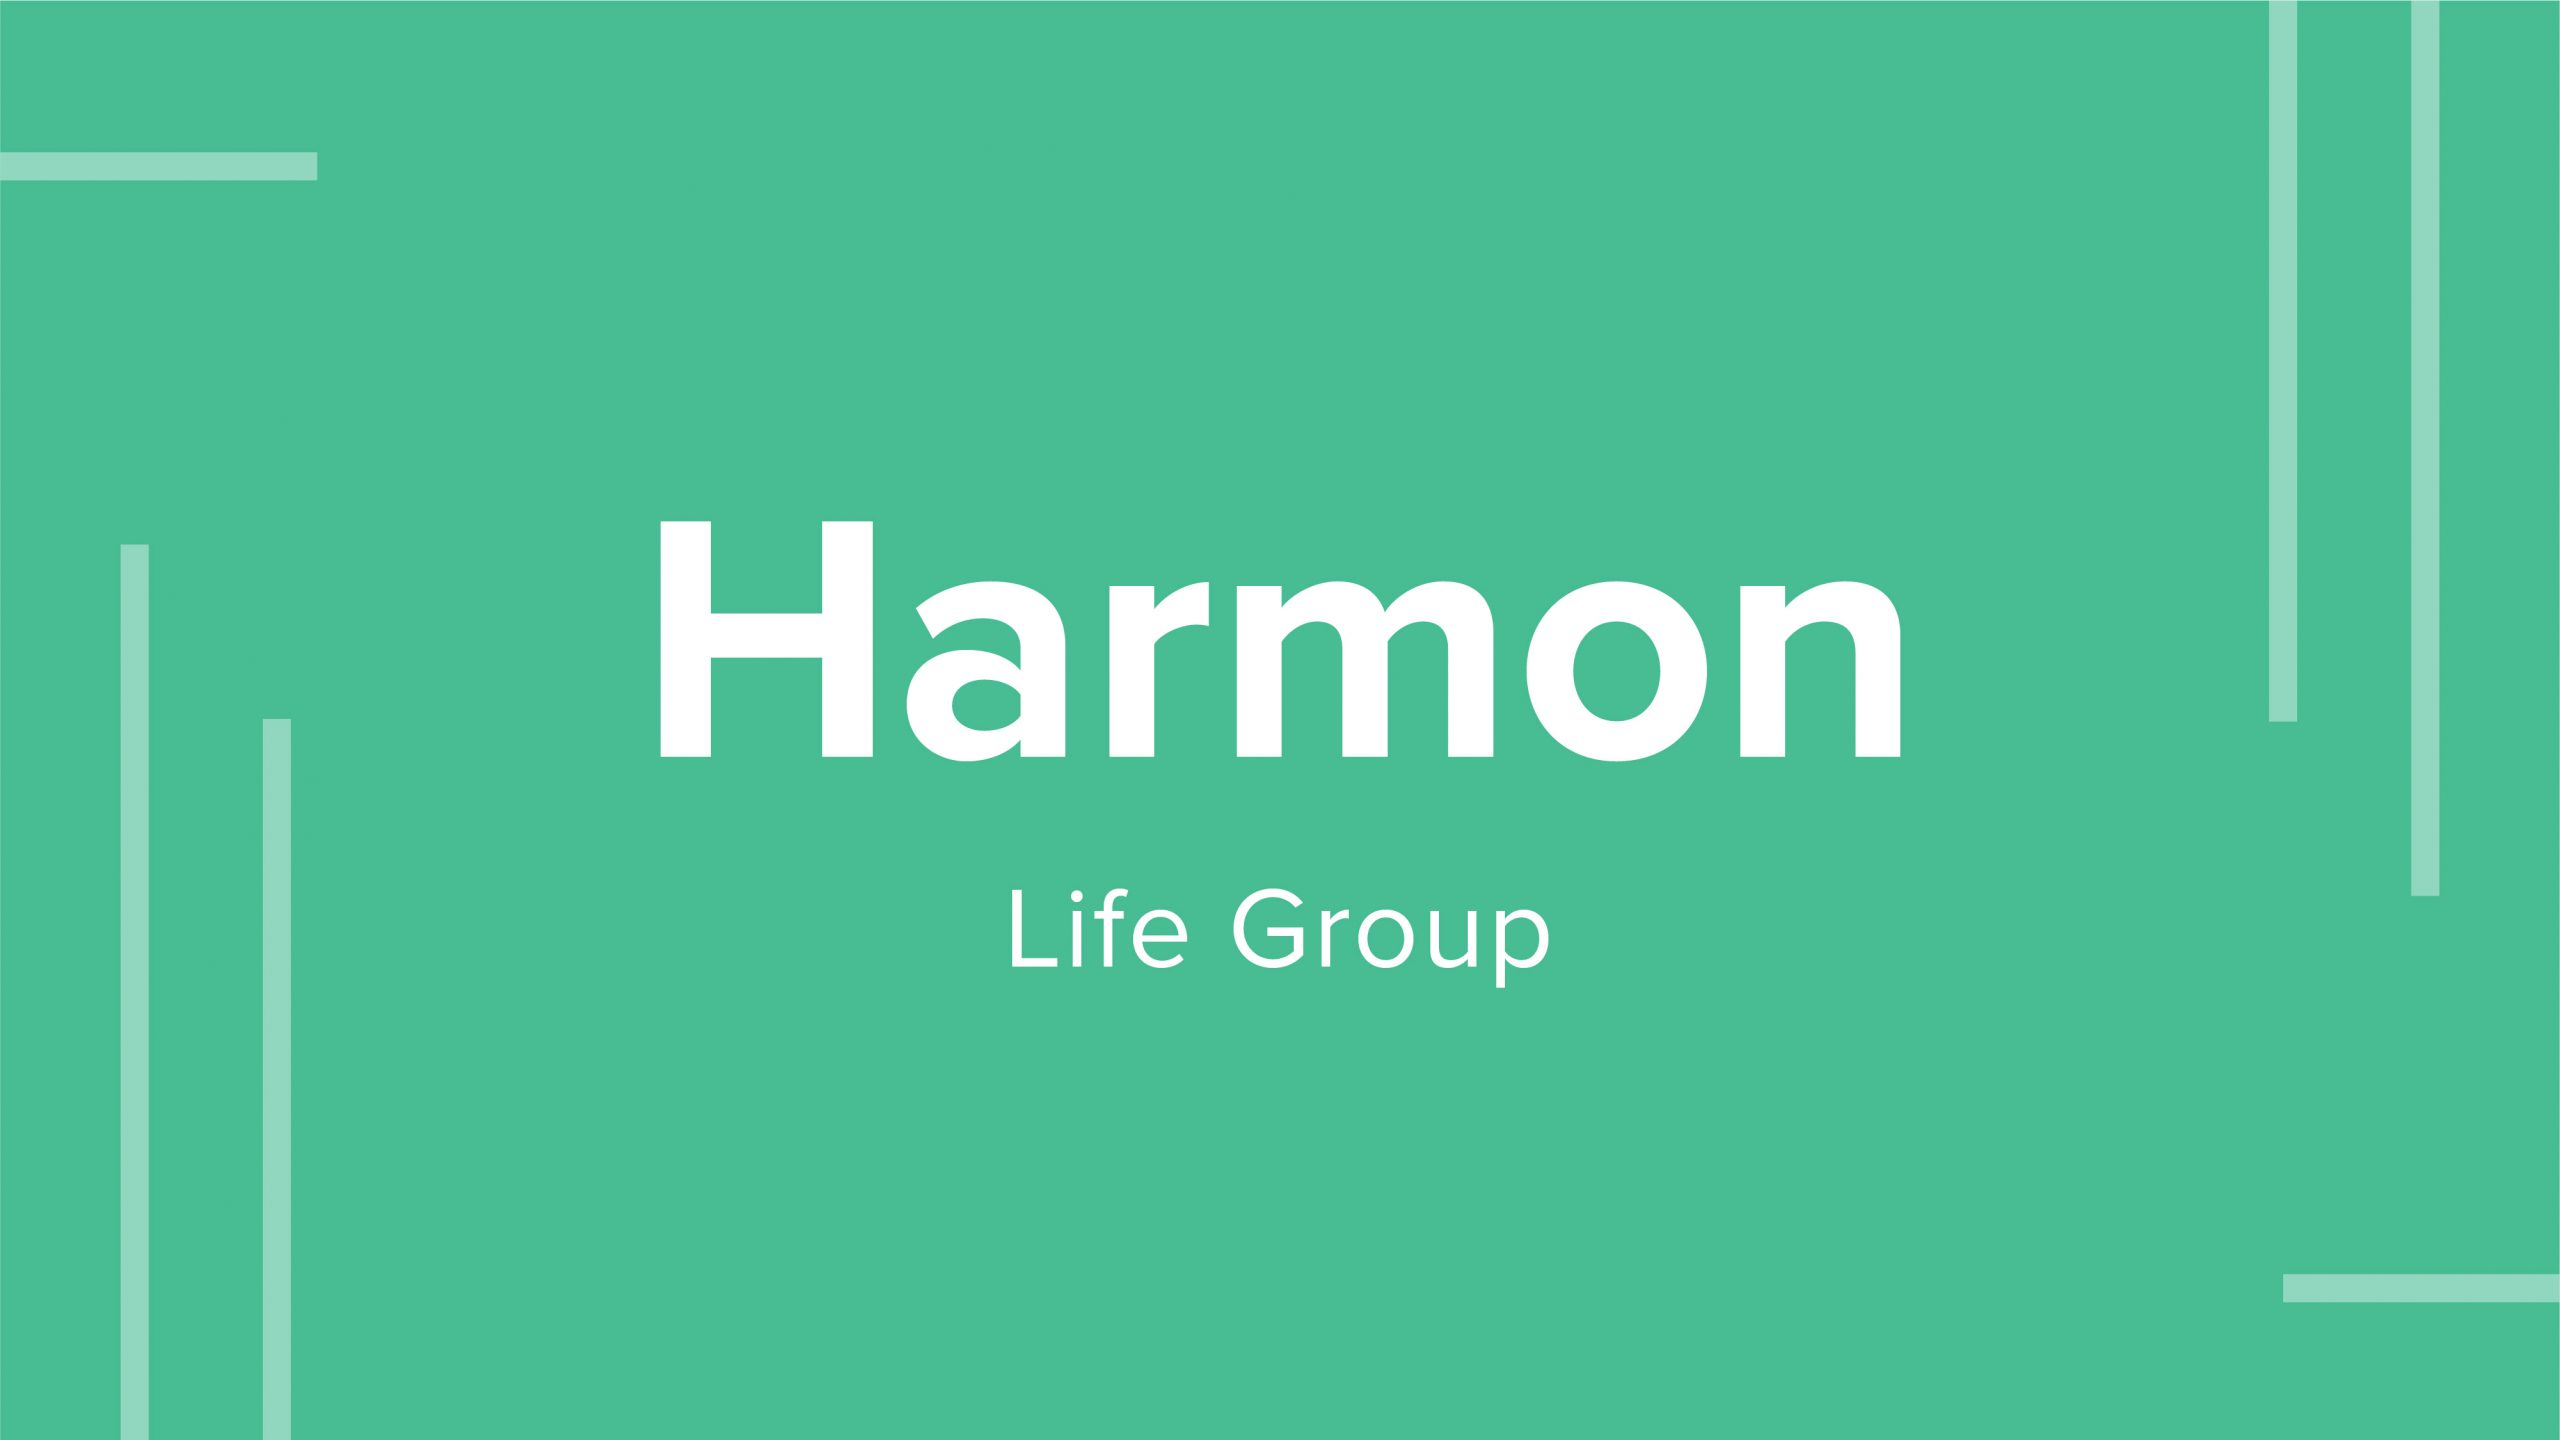 Harmon Life Group